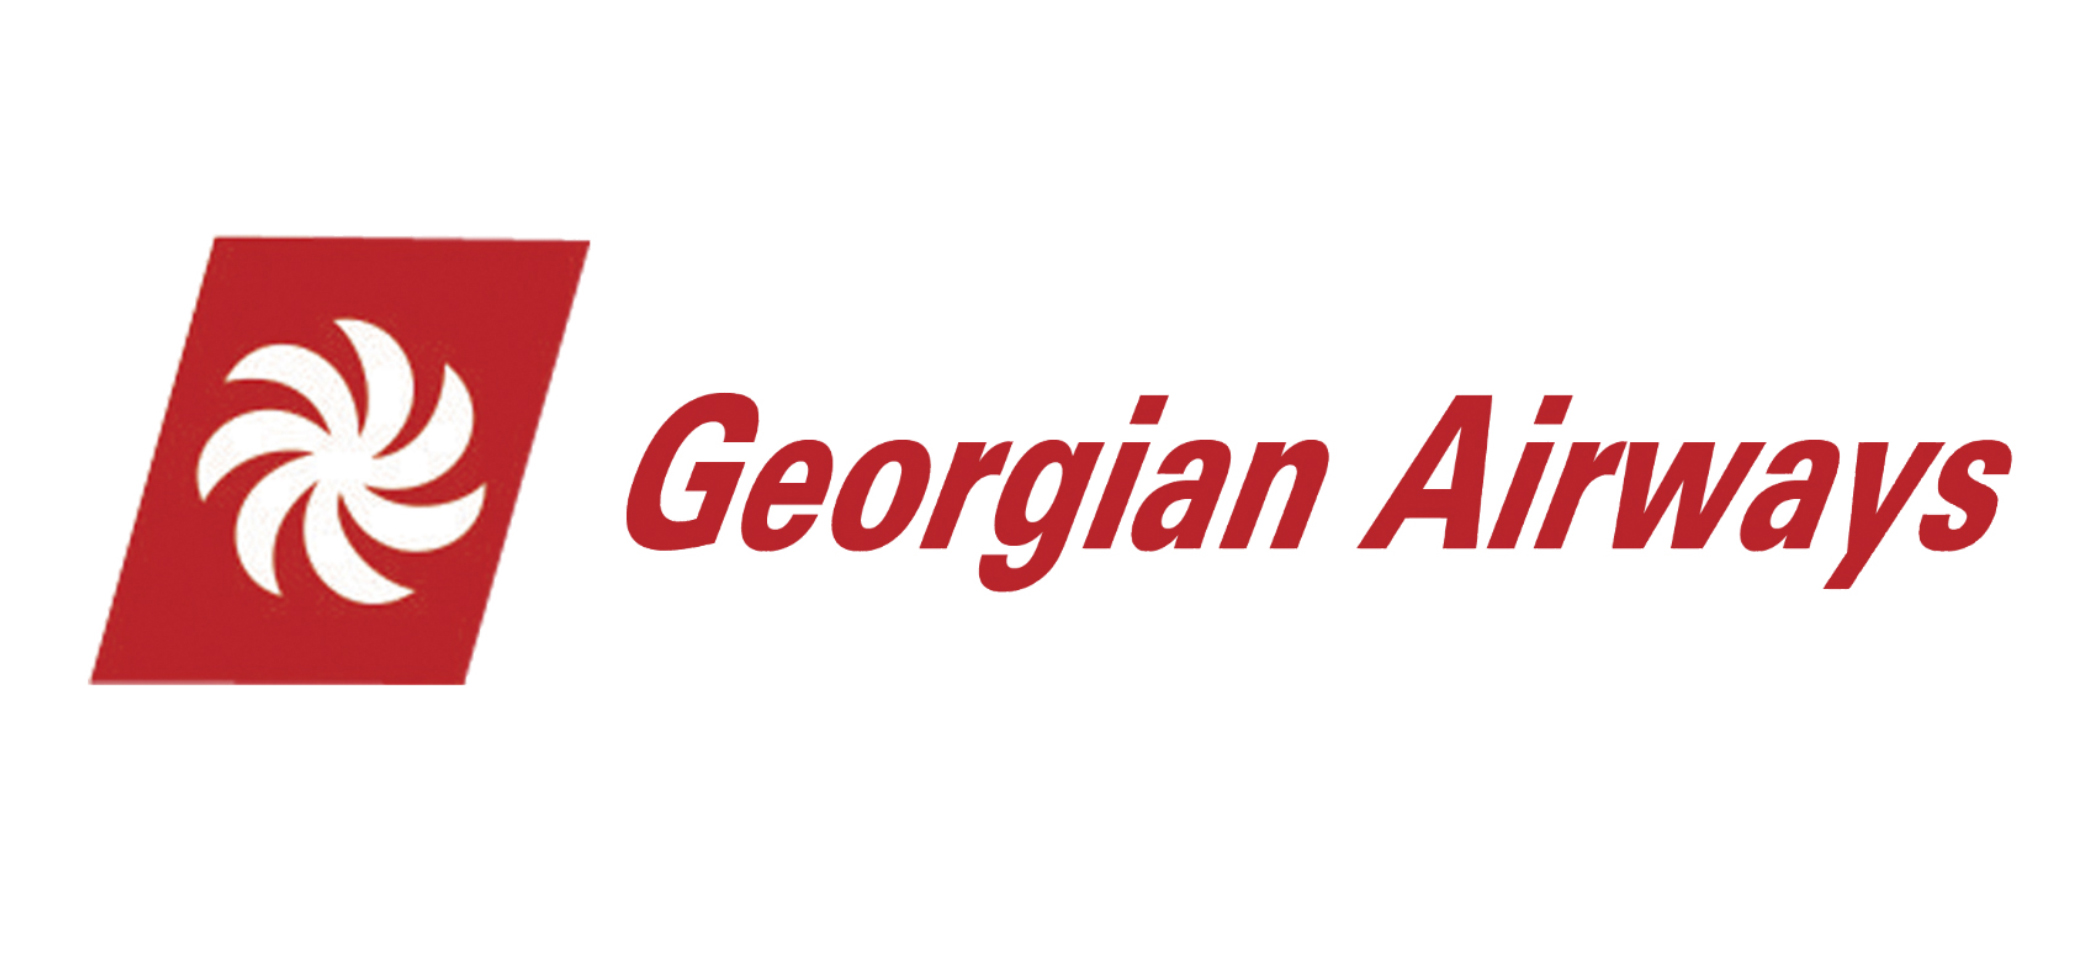 Рейсы в / из России 2019 с GEORGIAN AIRWAYS